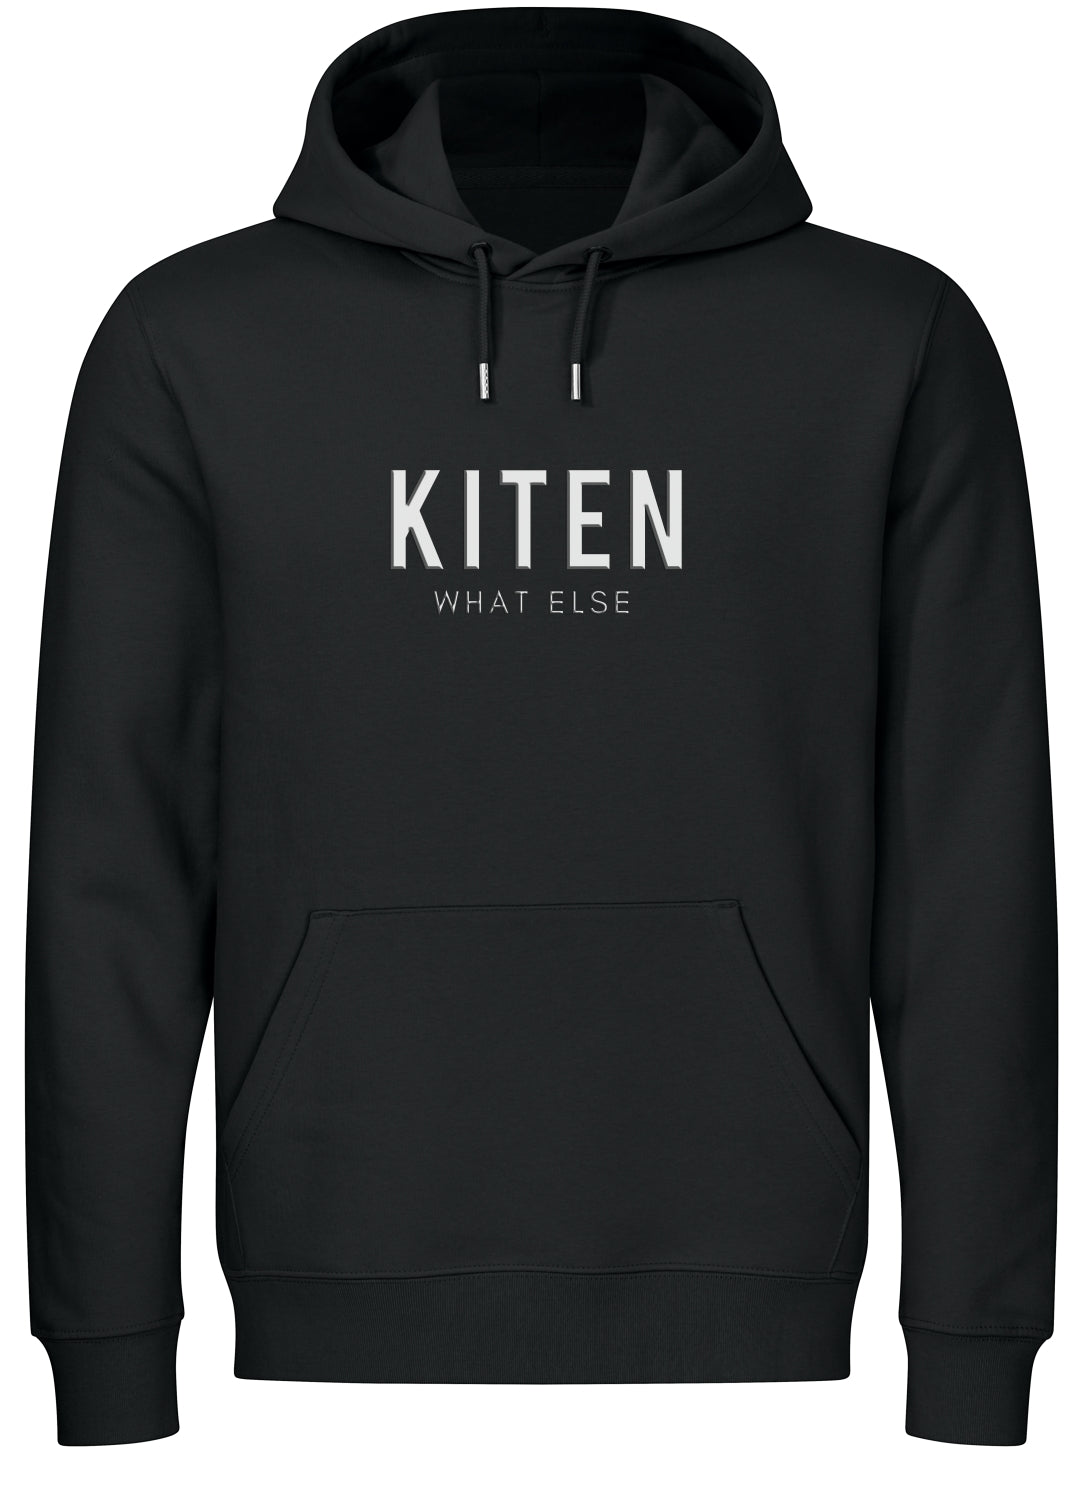 Kiten - What Else (Unisex) Kiten - What Else (Unisex)